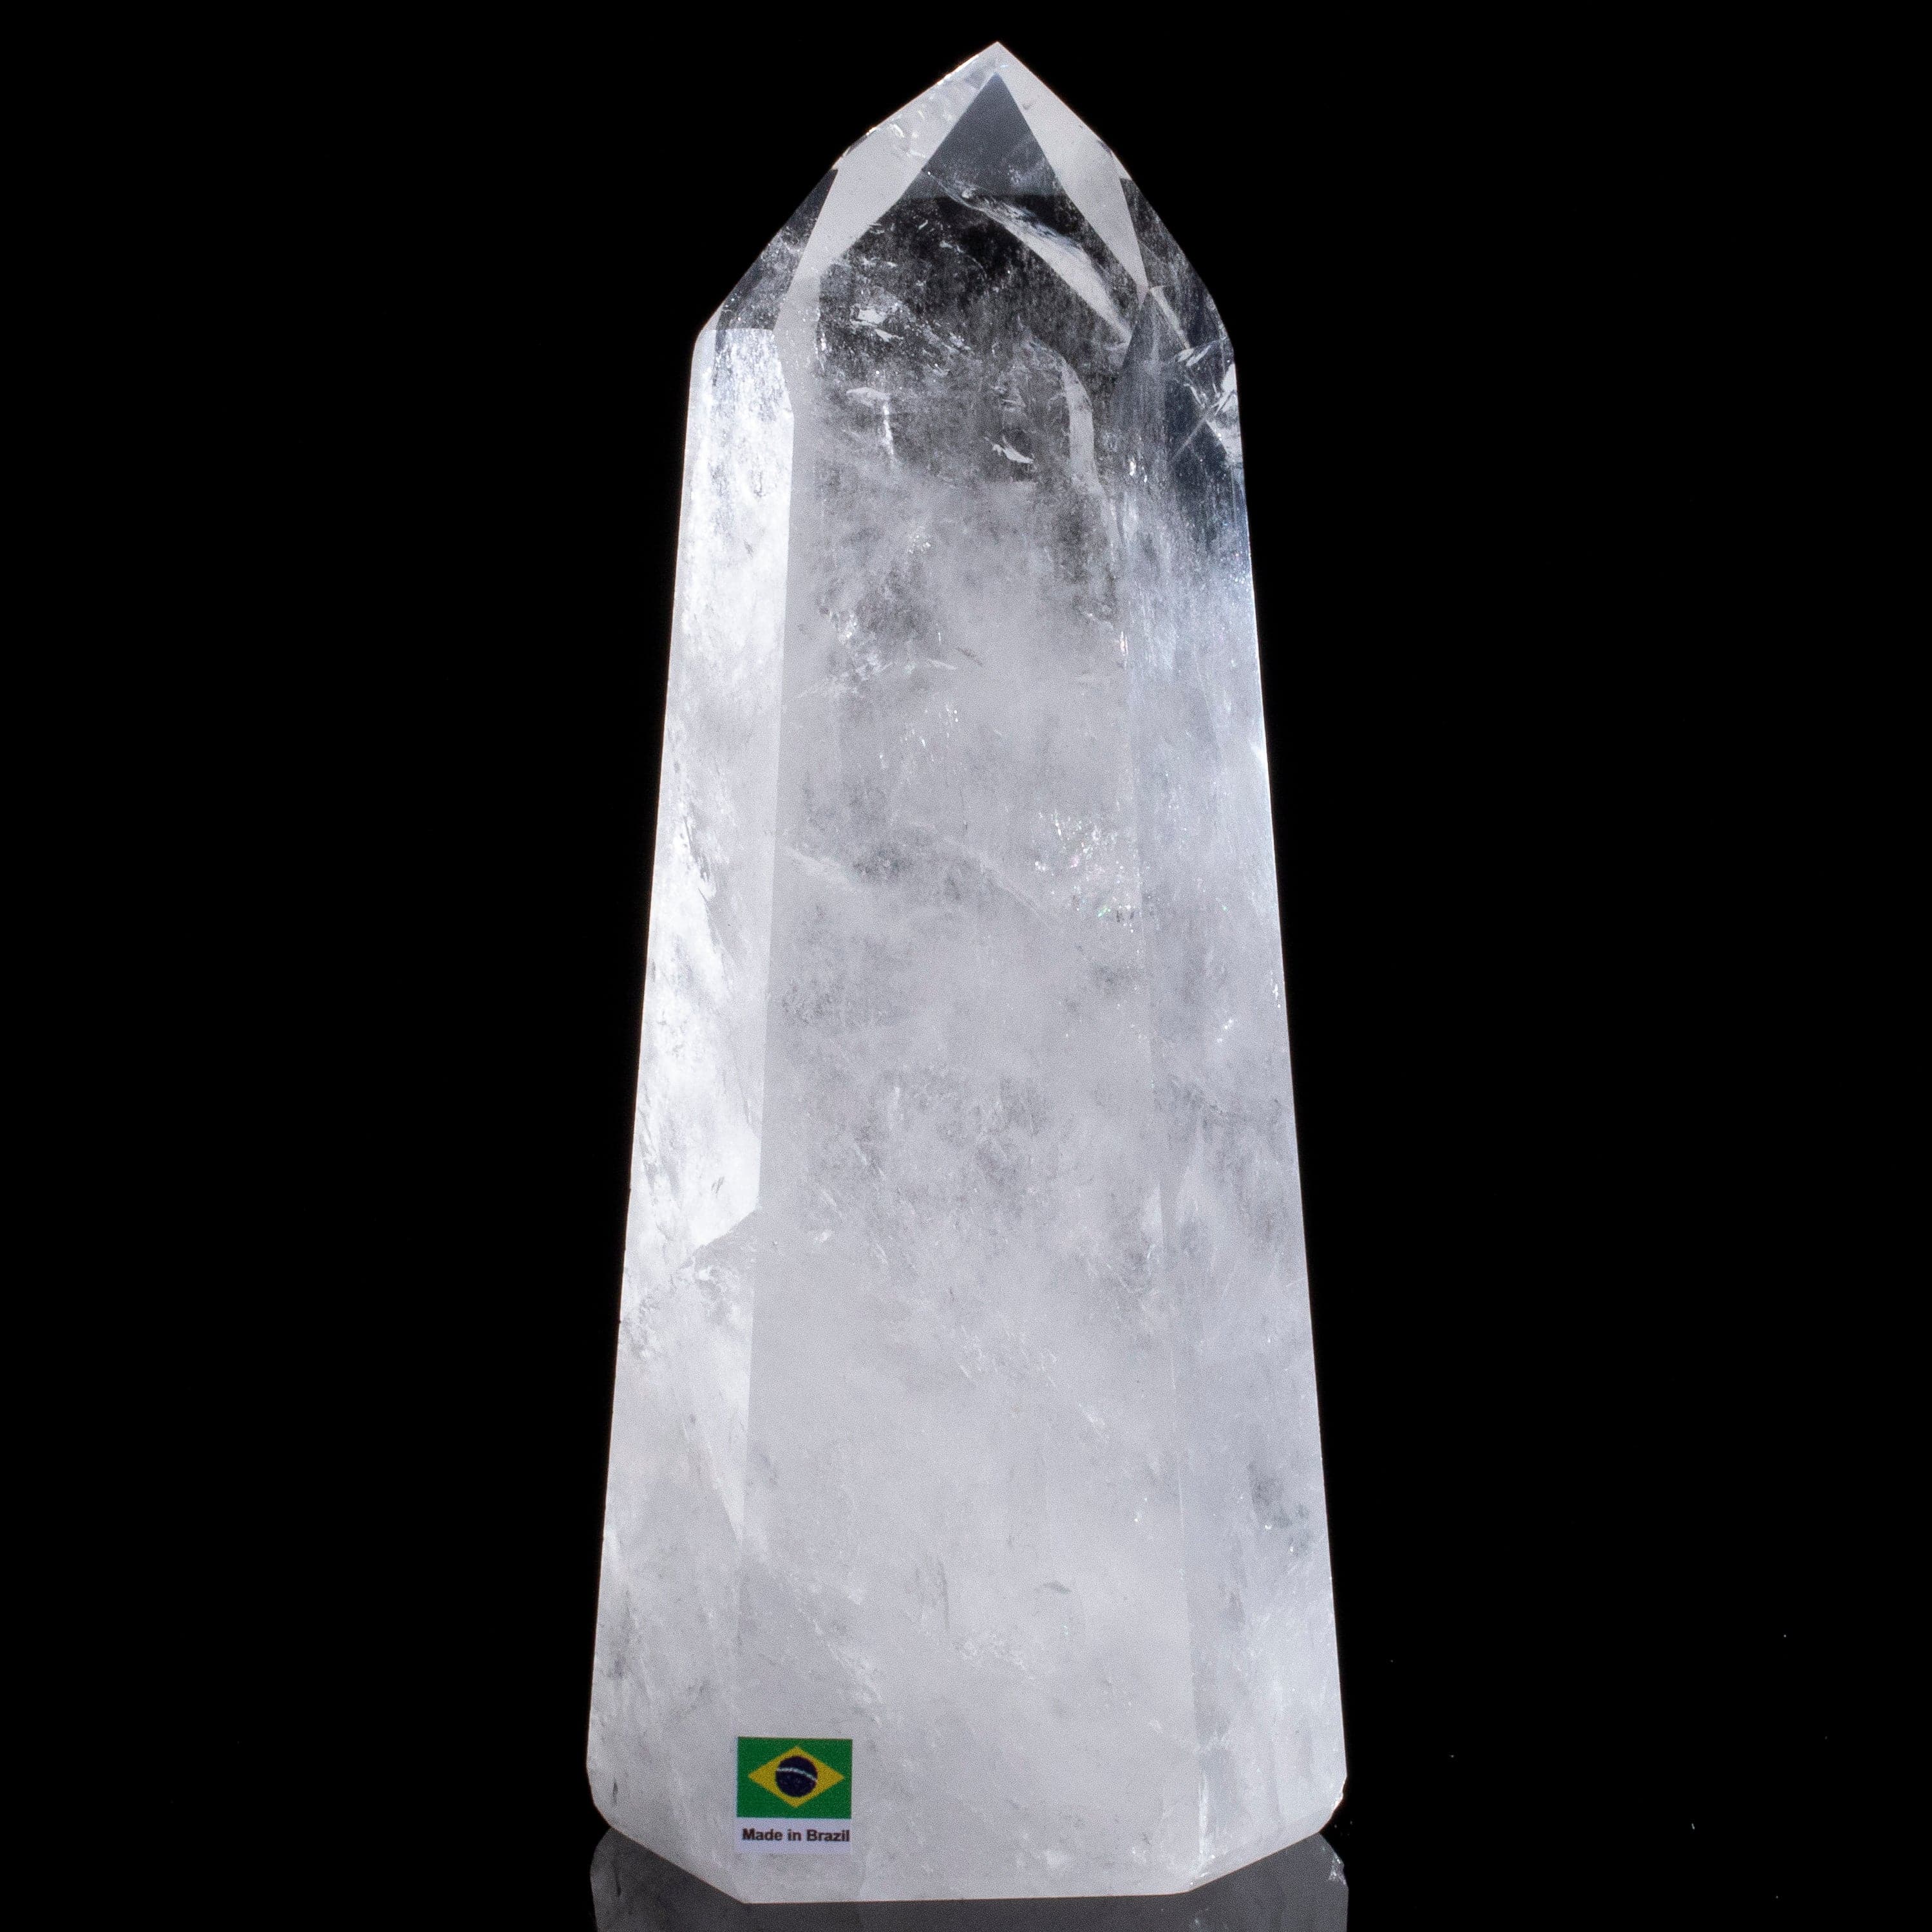 Kalifano Quartz Natural Quartz Obelisk from Brazil - 9.5" / 2,014 grams QZ3000.002